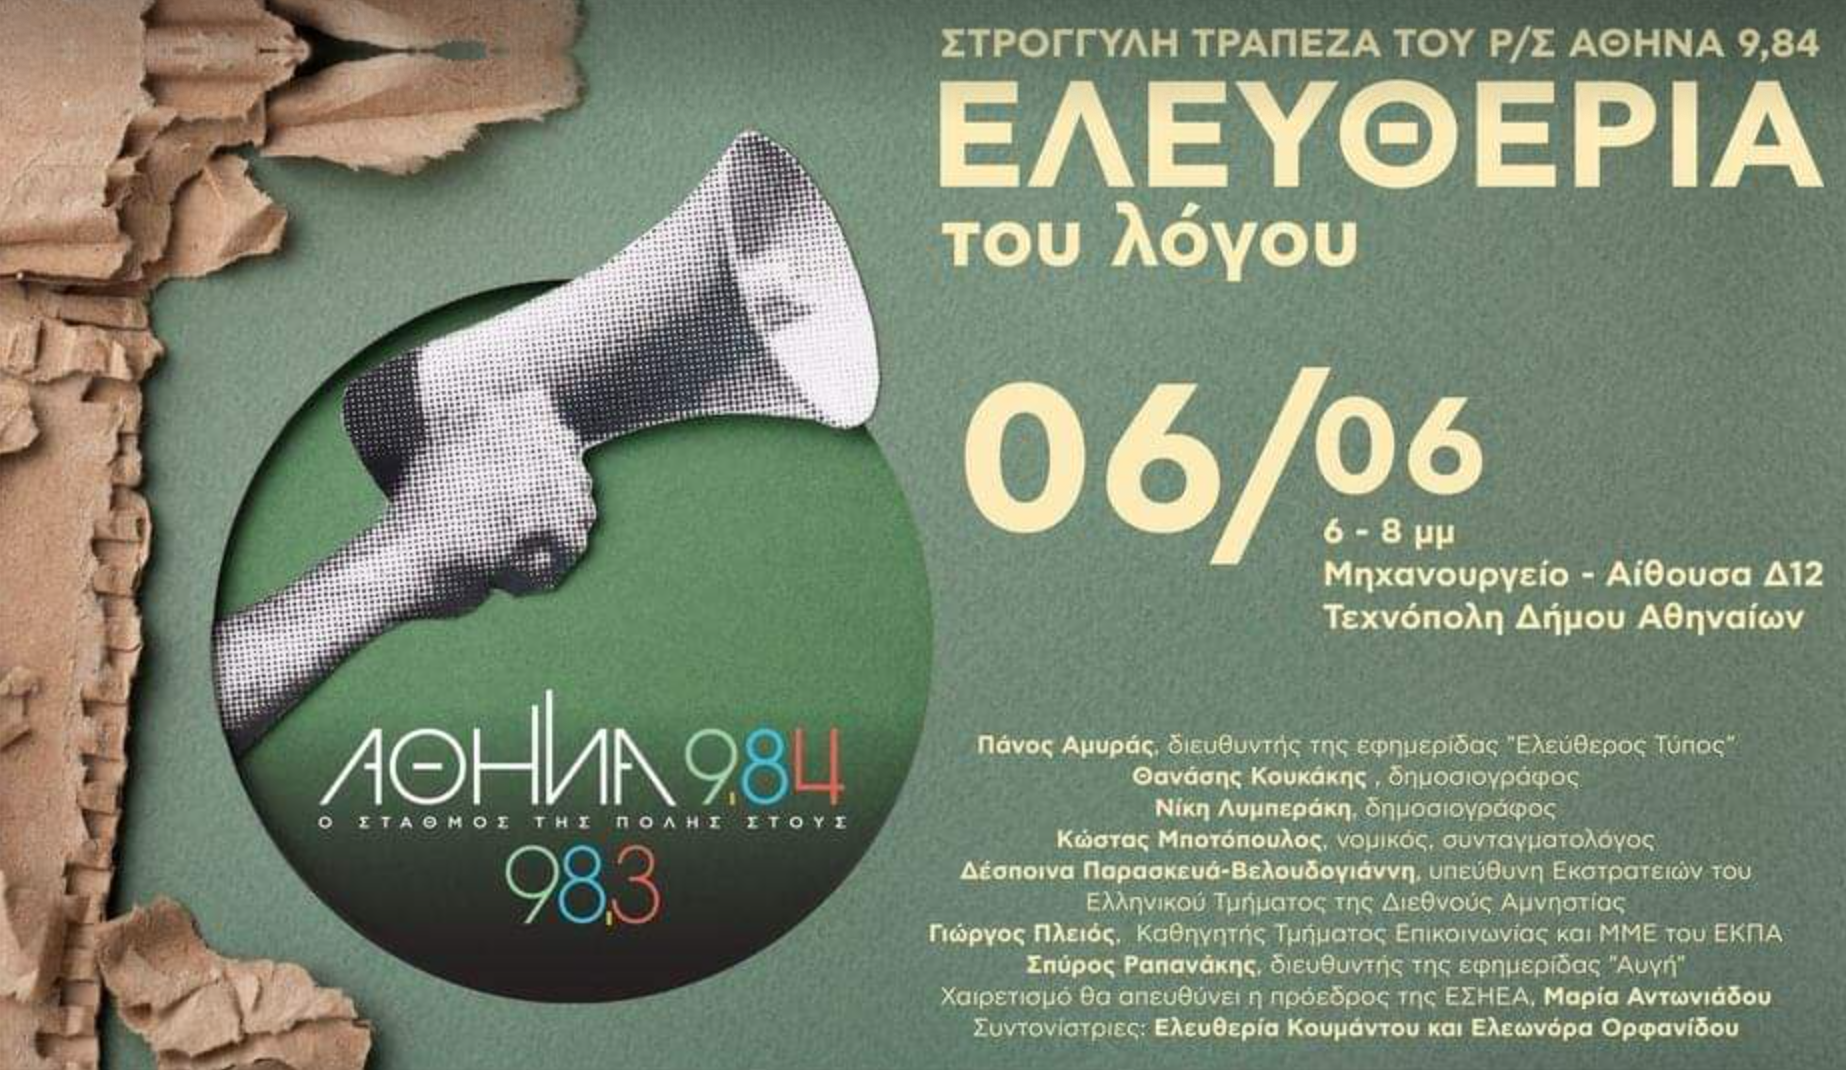 Υπάρχει λογοκρισία στην Ελλάδα και ποιου τύπου; Συζήτηση του ρ/σ Αθήνα 9,84 για την ελευθερία του λόγου